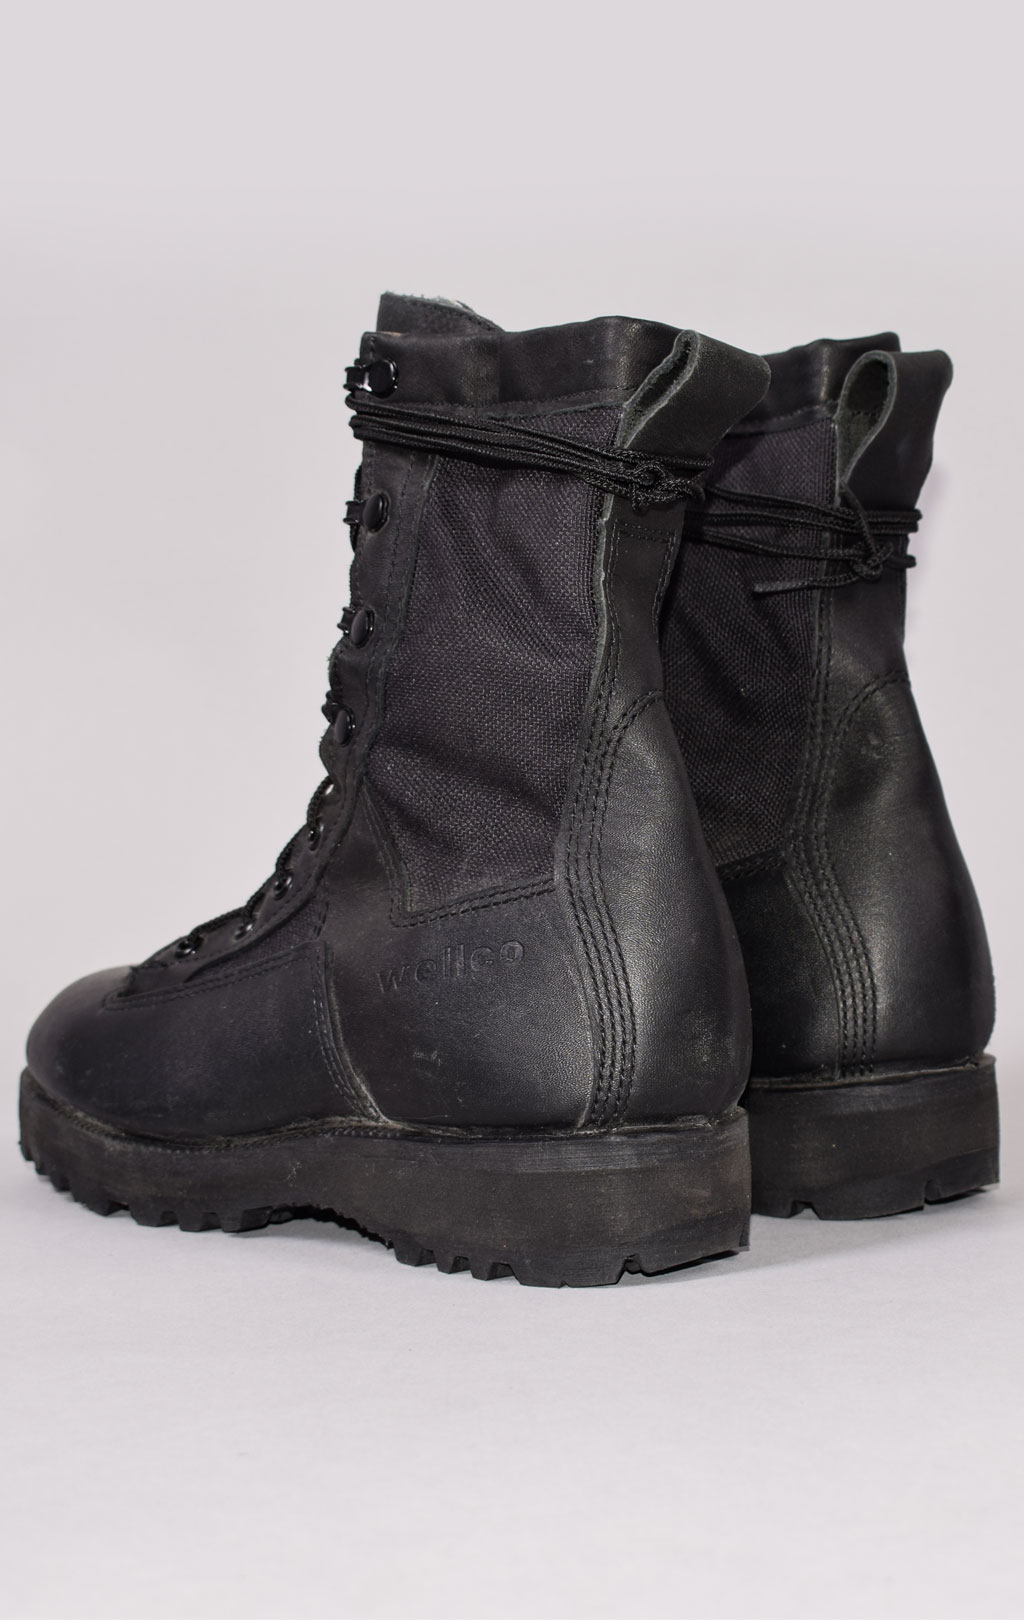 Женские ботинки-берцы Infantry Combat steel toe США